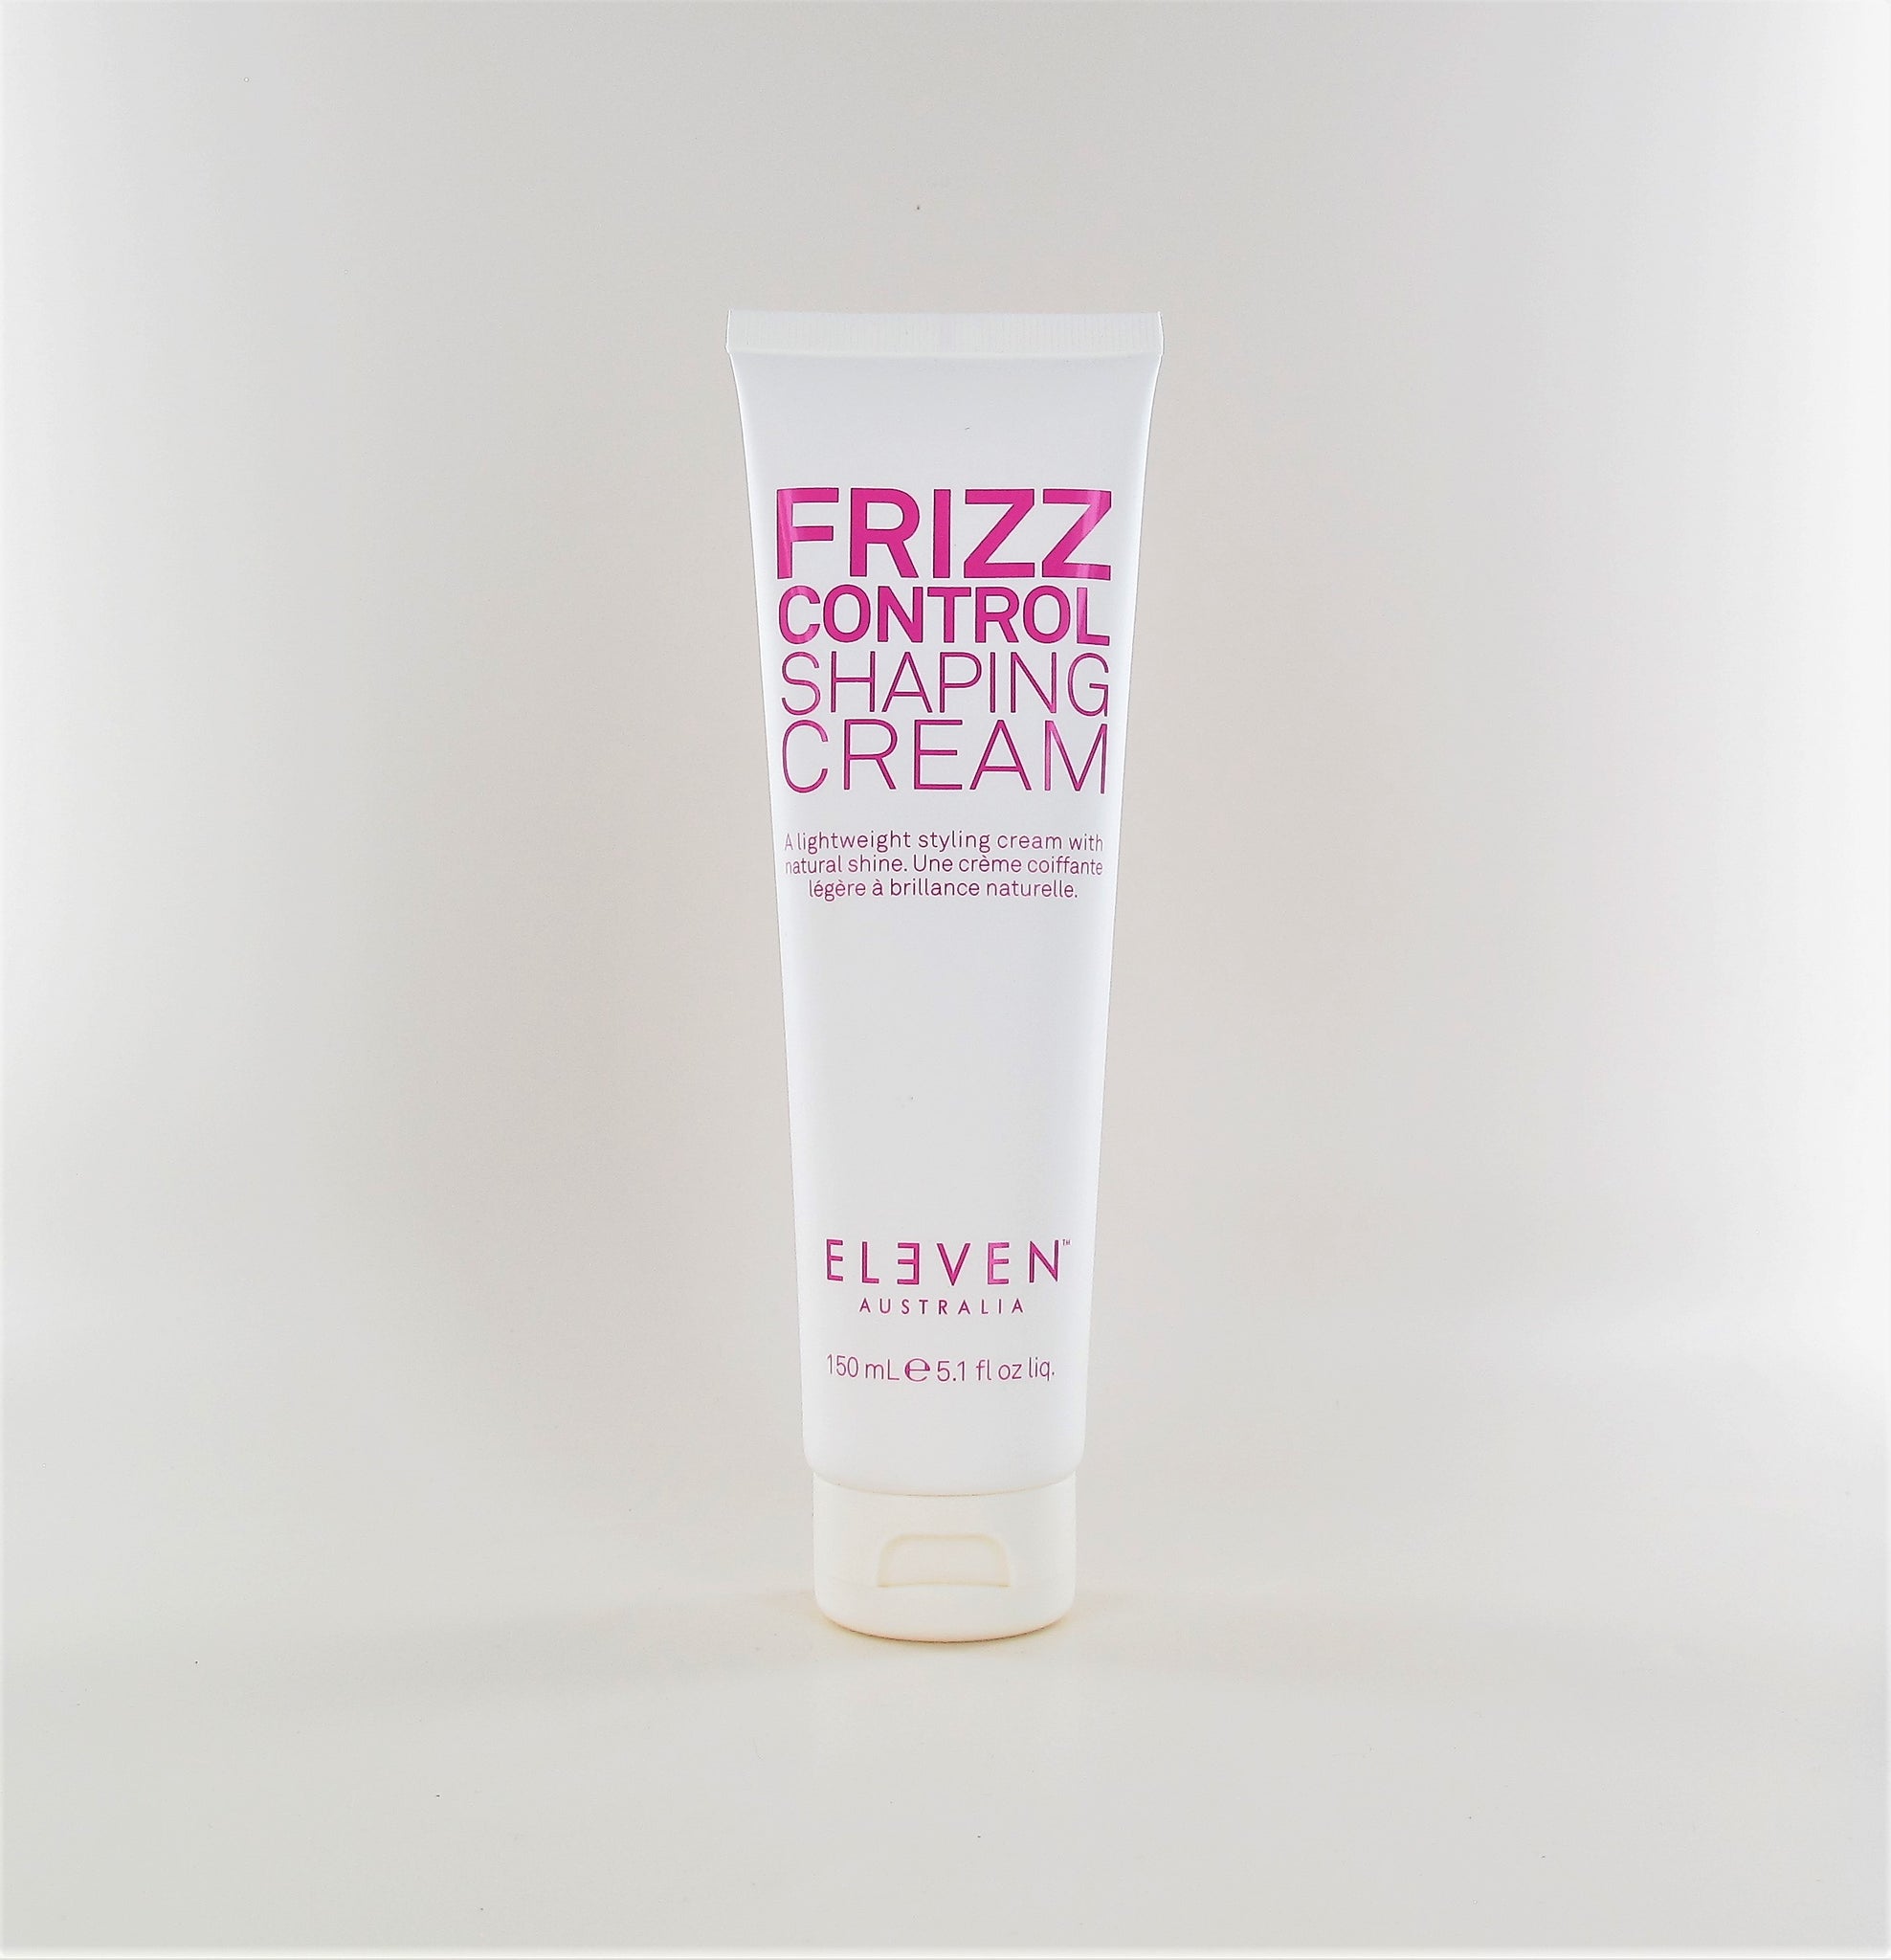 Eleven Frizz Control Shaping Cream 5.1 oz